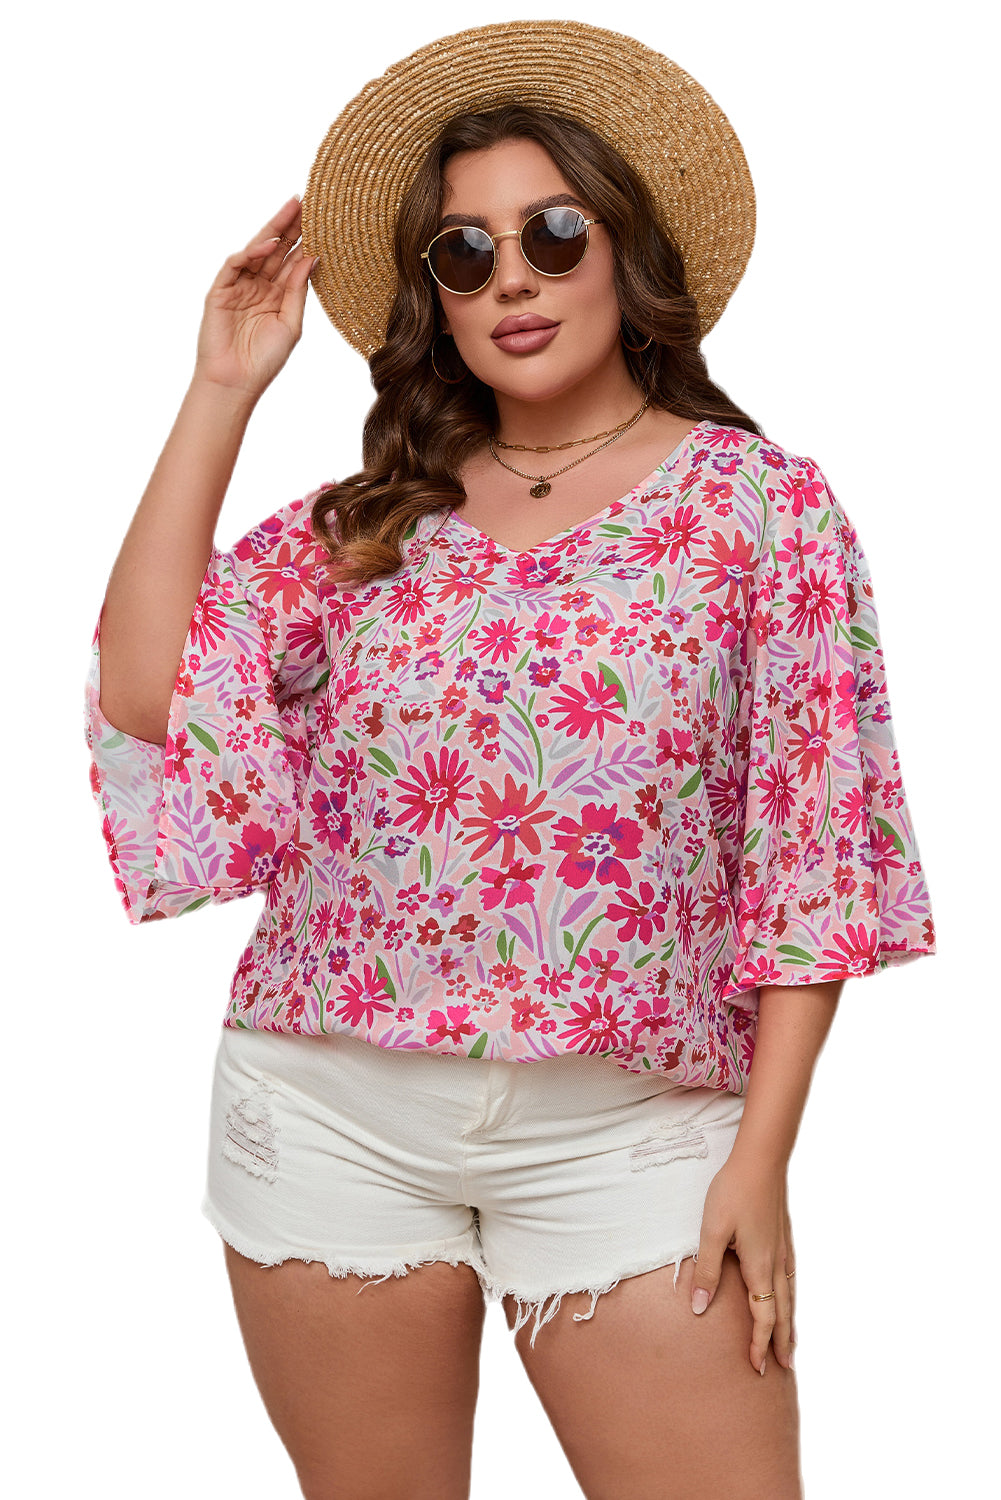 Rožnata bluza velike velikosti z v-izrezom in pol rokavi s cvetličnimi naborki